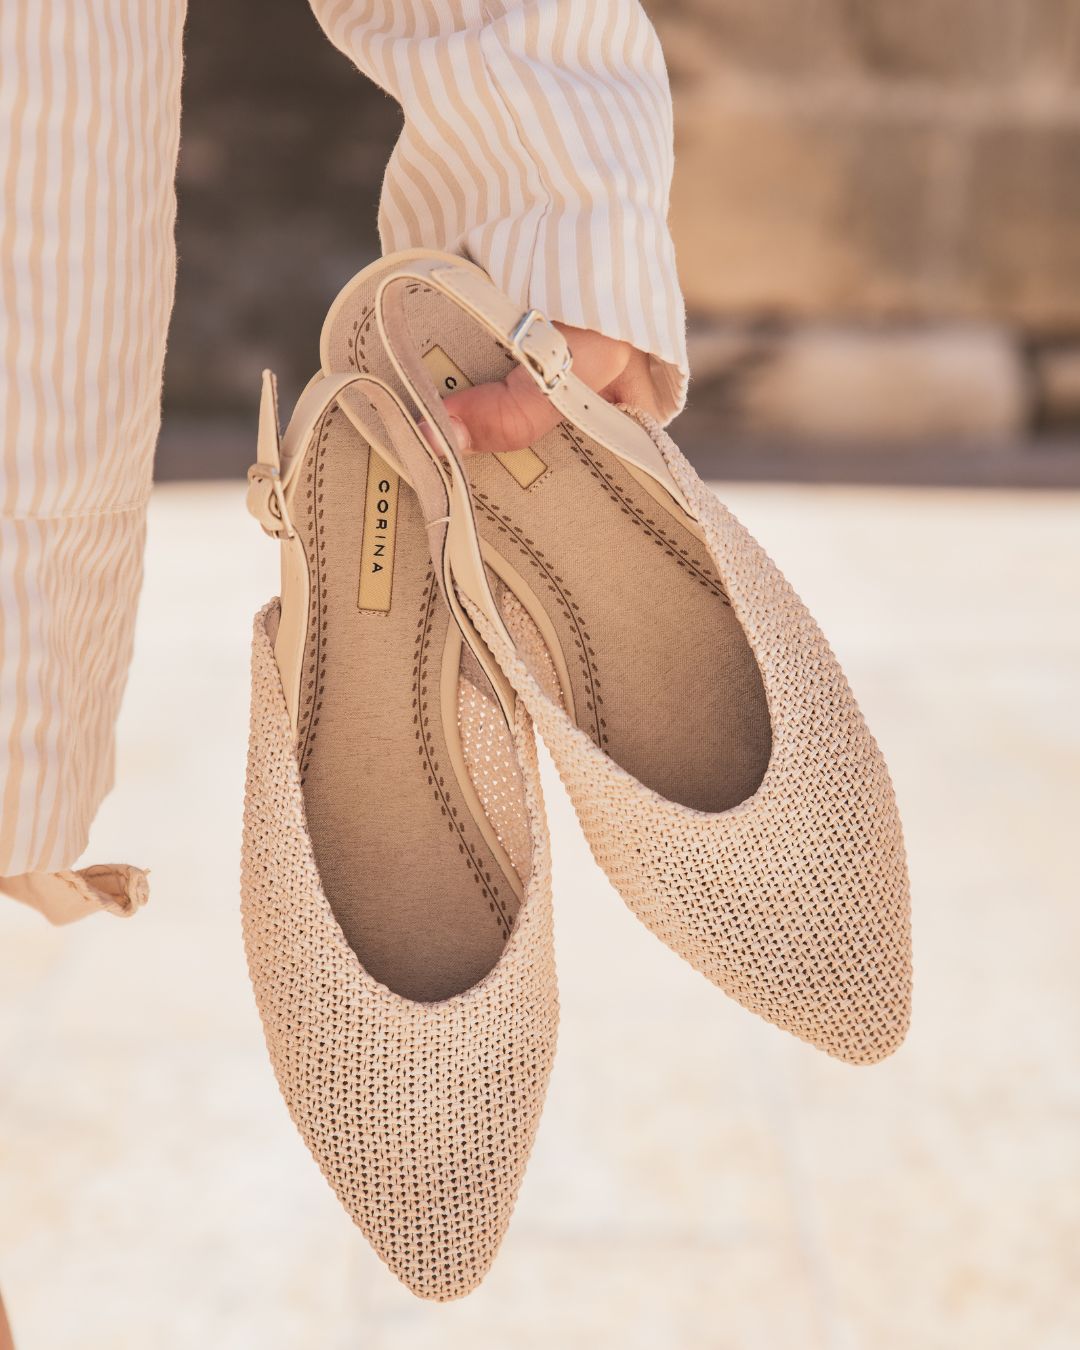 Sandale femme plate escarpin beige - Marjorie